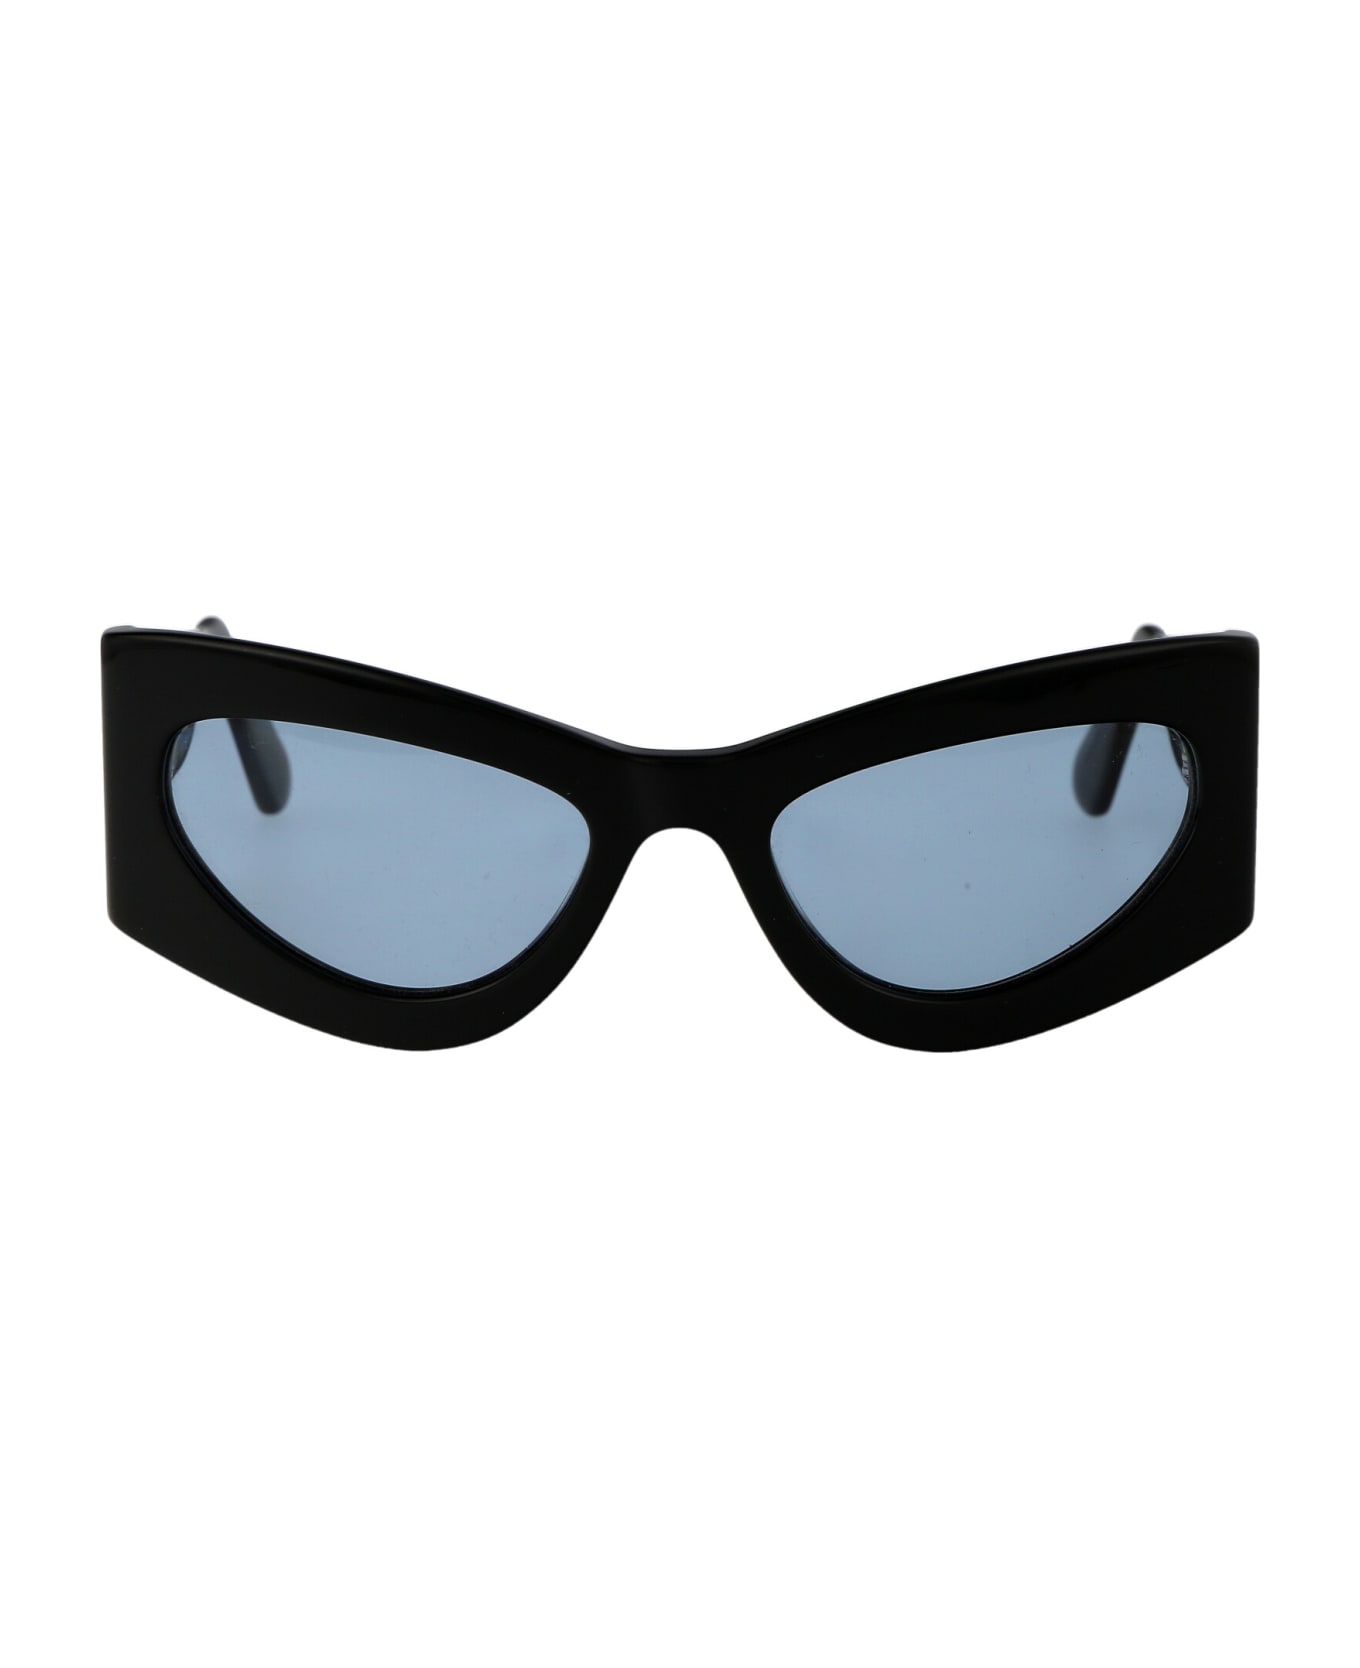 GCDS Gd0036/s Sunglasses - 01V BLACK BLUE